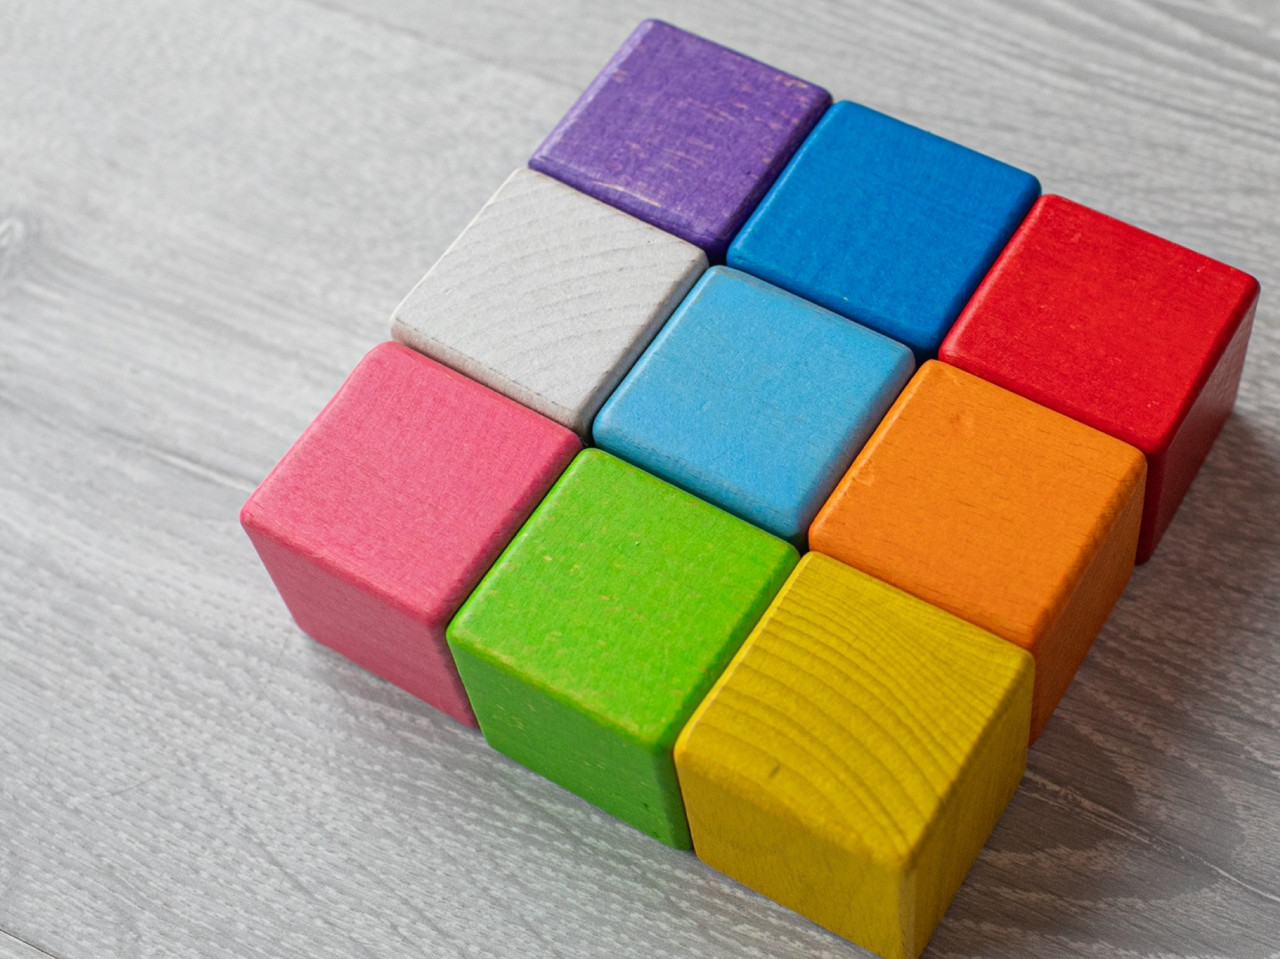 Дитяча іграшка "Кубики" 9 шт різнокольорові 4х4 см з екологічного натурального дерева